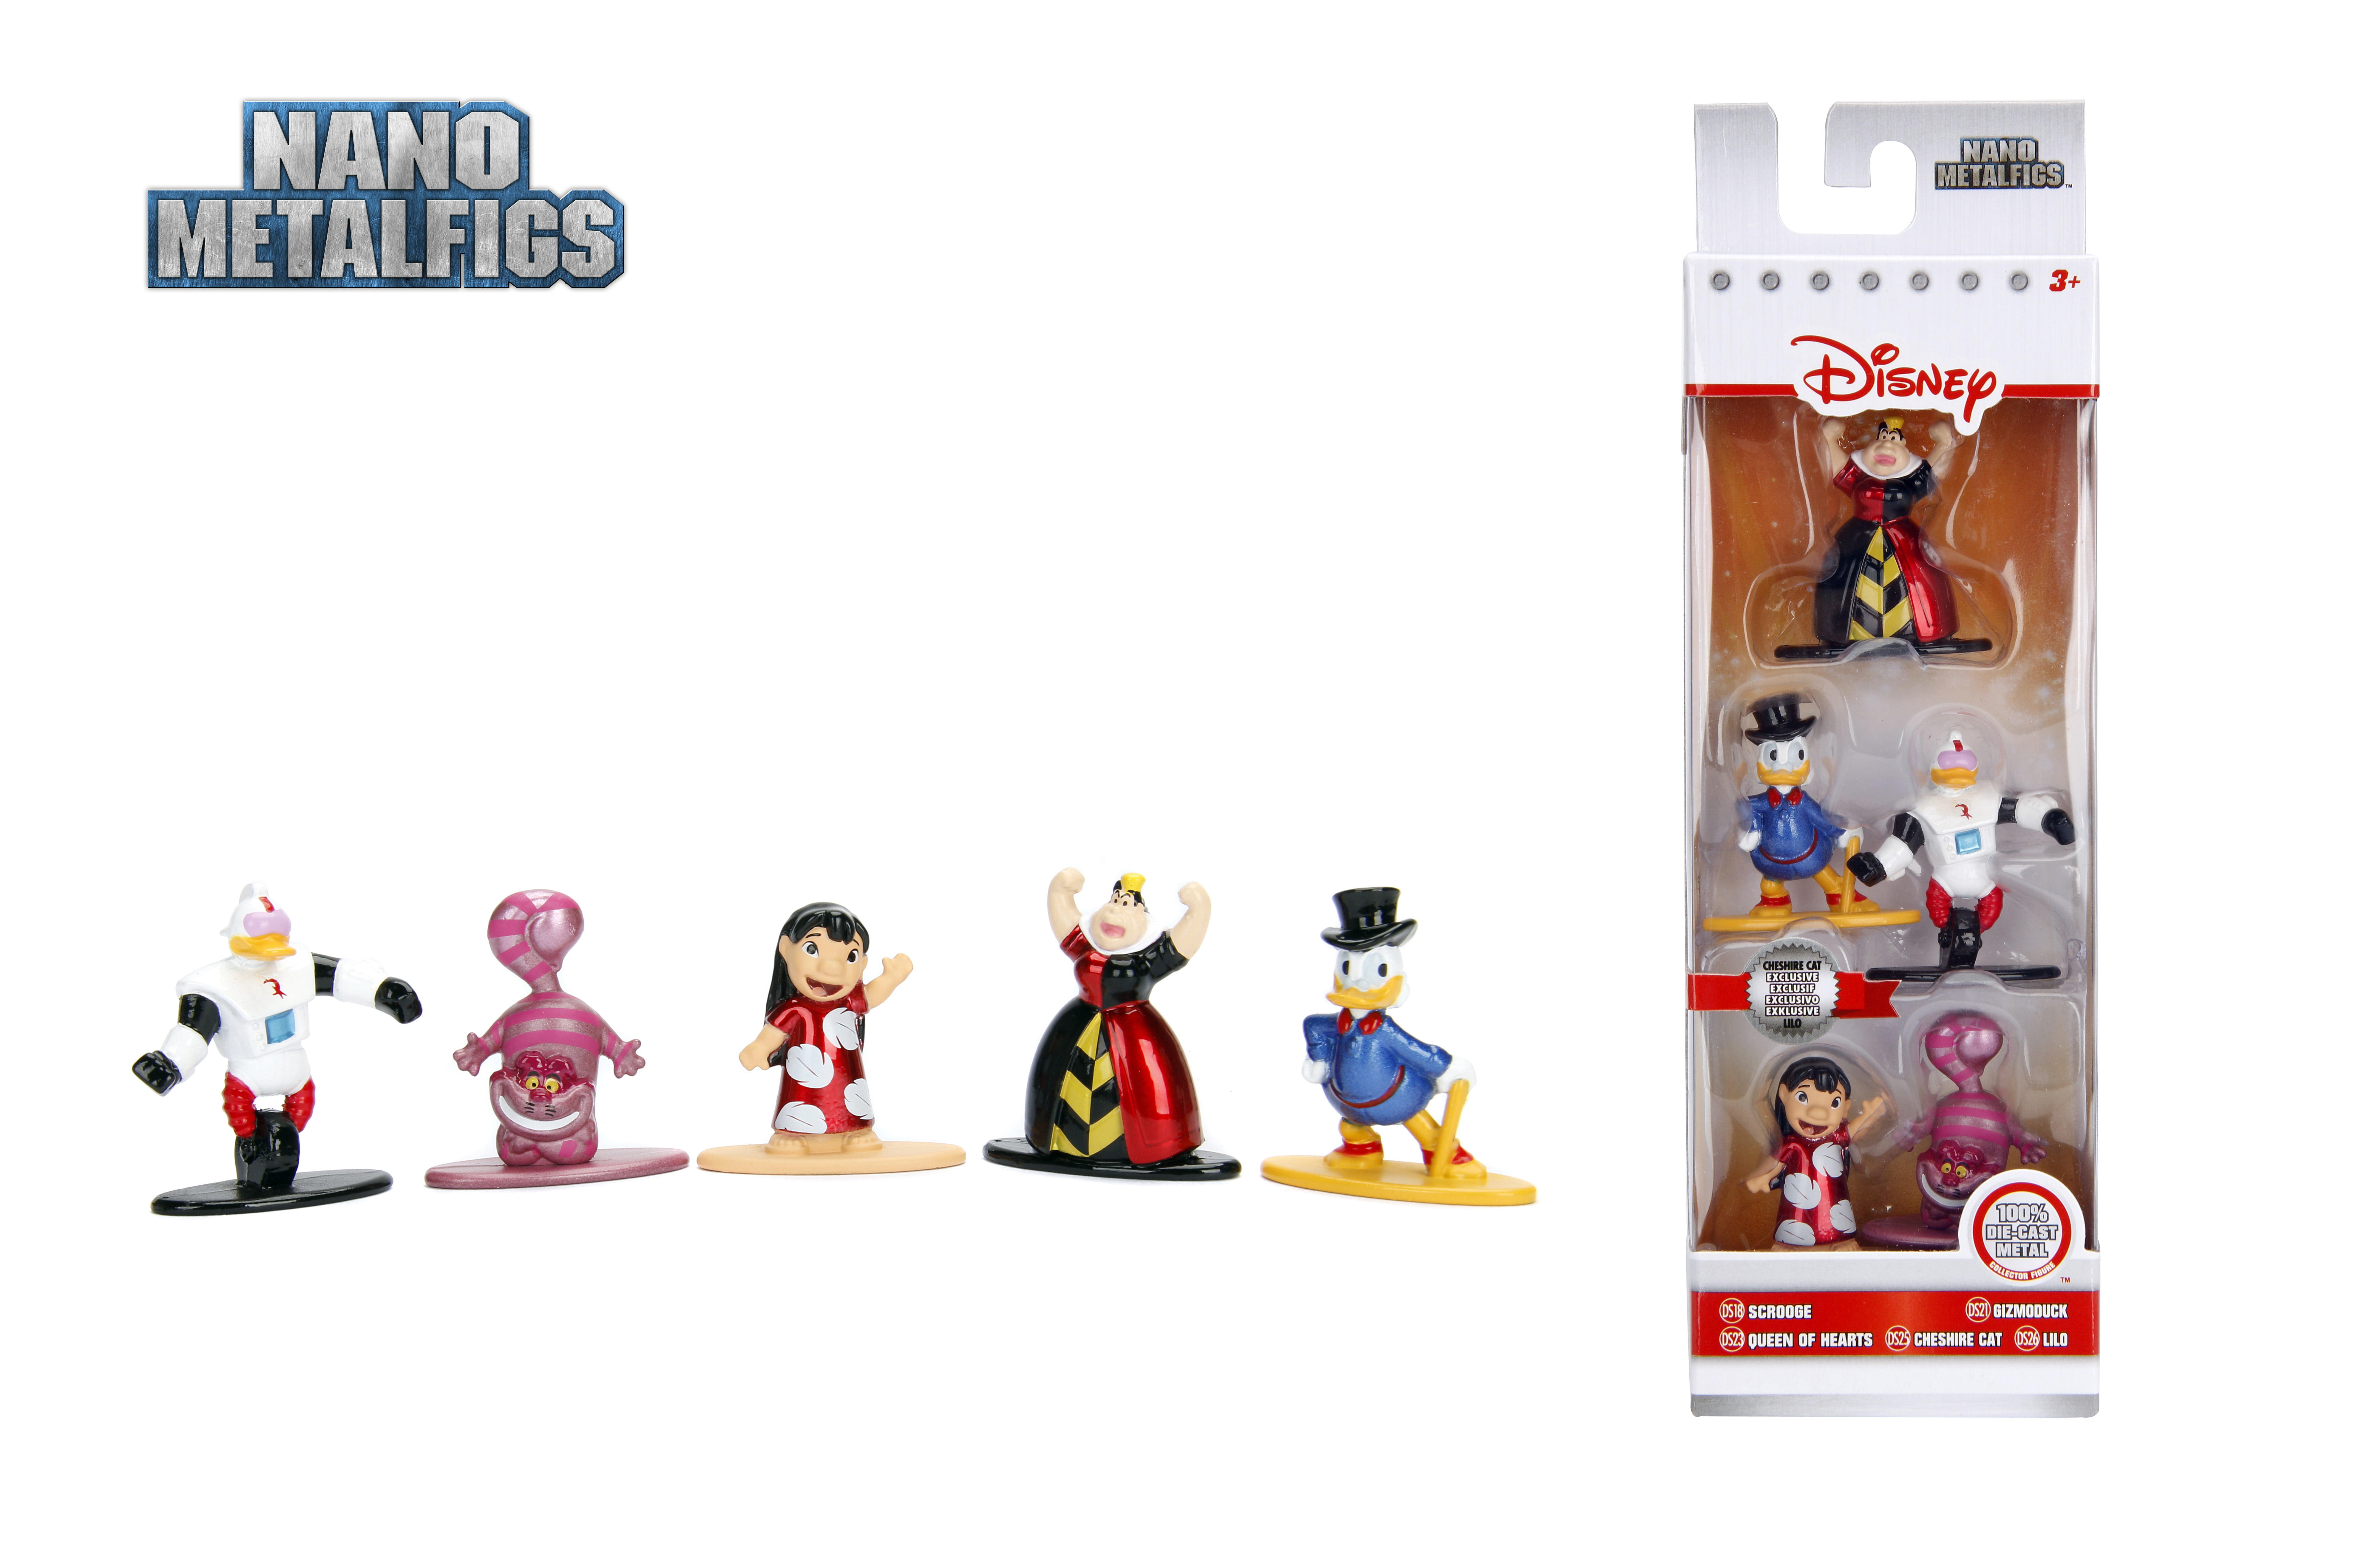 10 Figuren Mickey Mouse-Scrooge-Lilo Jada Die Cast Metal Sammelfiguren/ Disney 